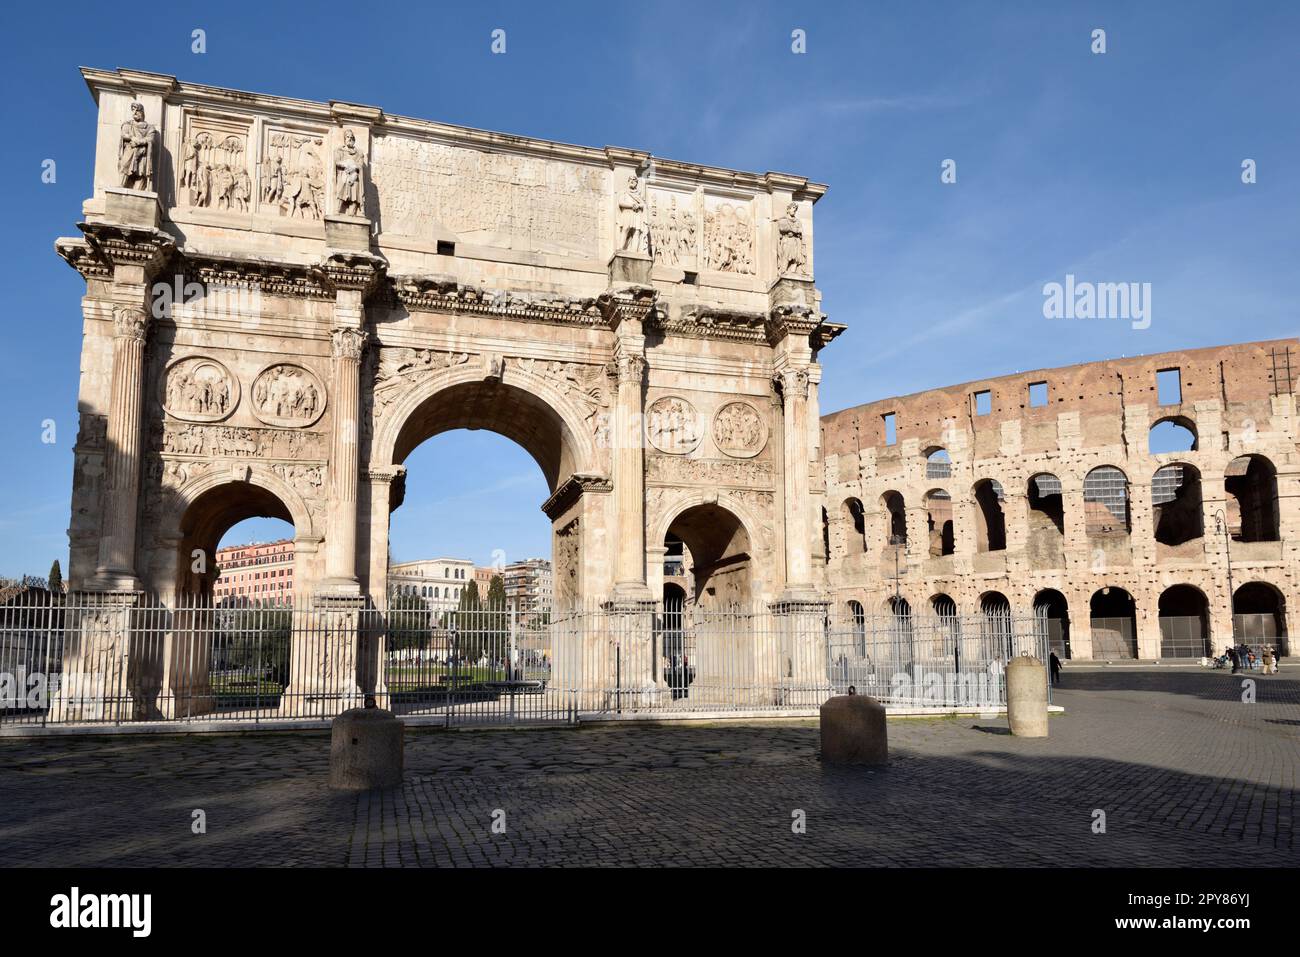 Italie, Rome, arche de Constantin et Colisée Banque D'Images